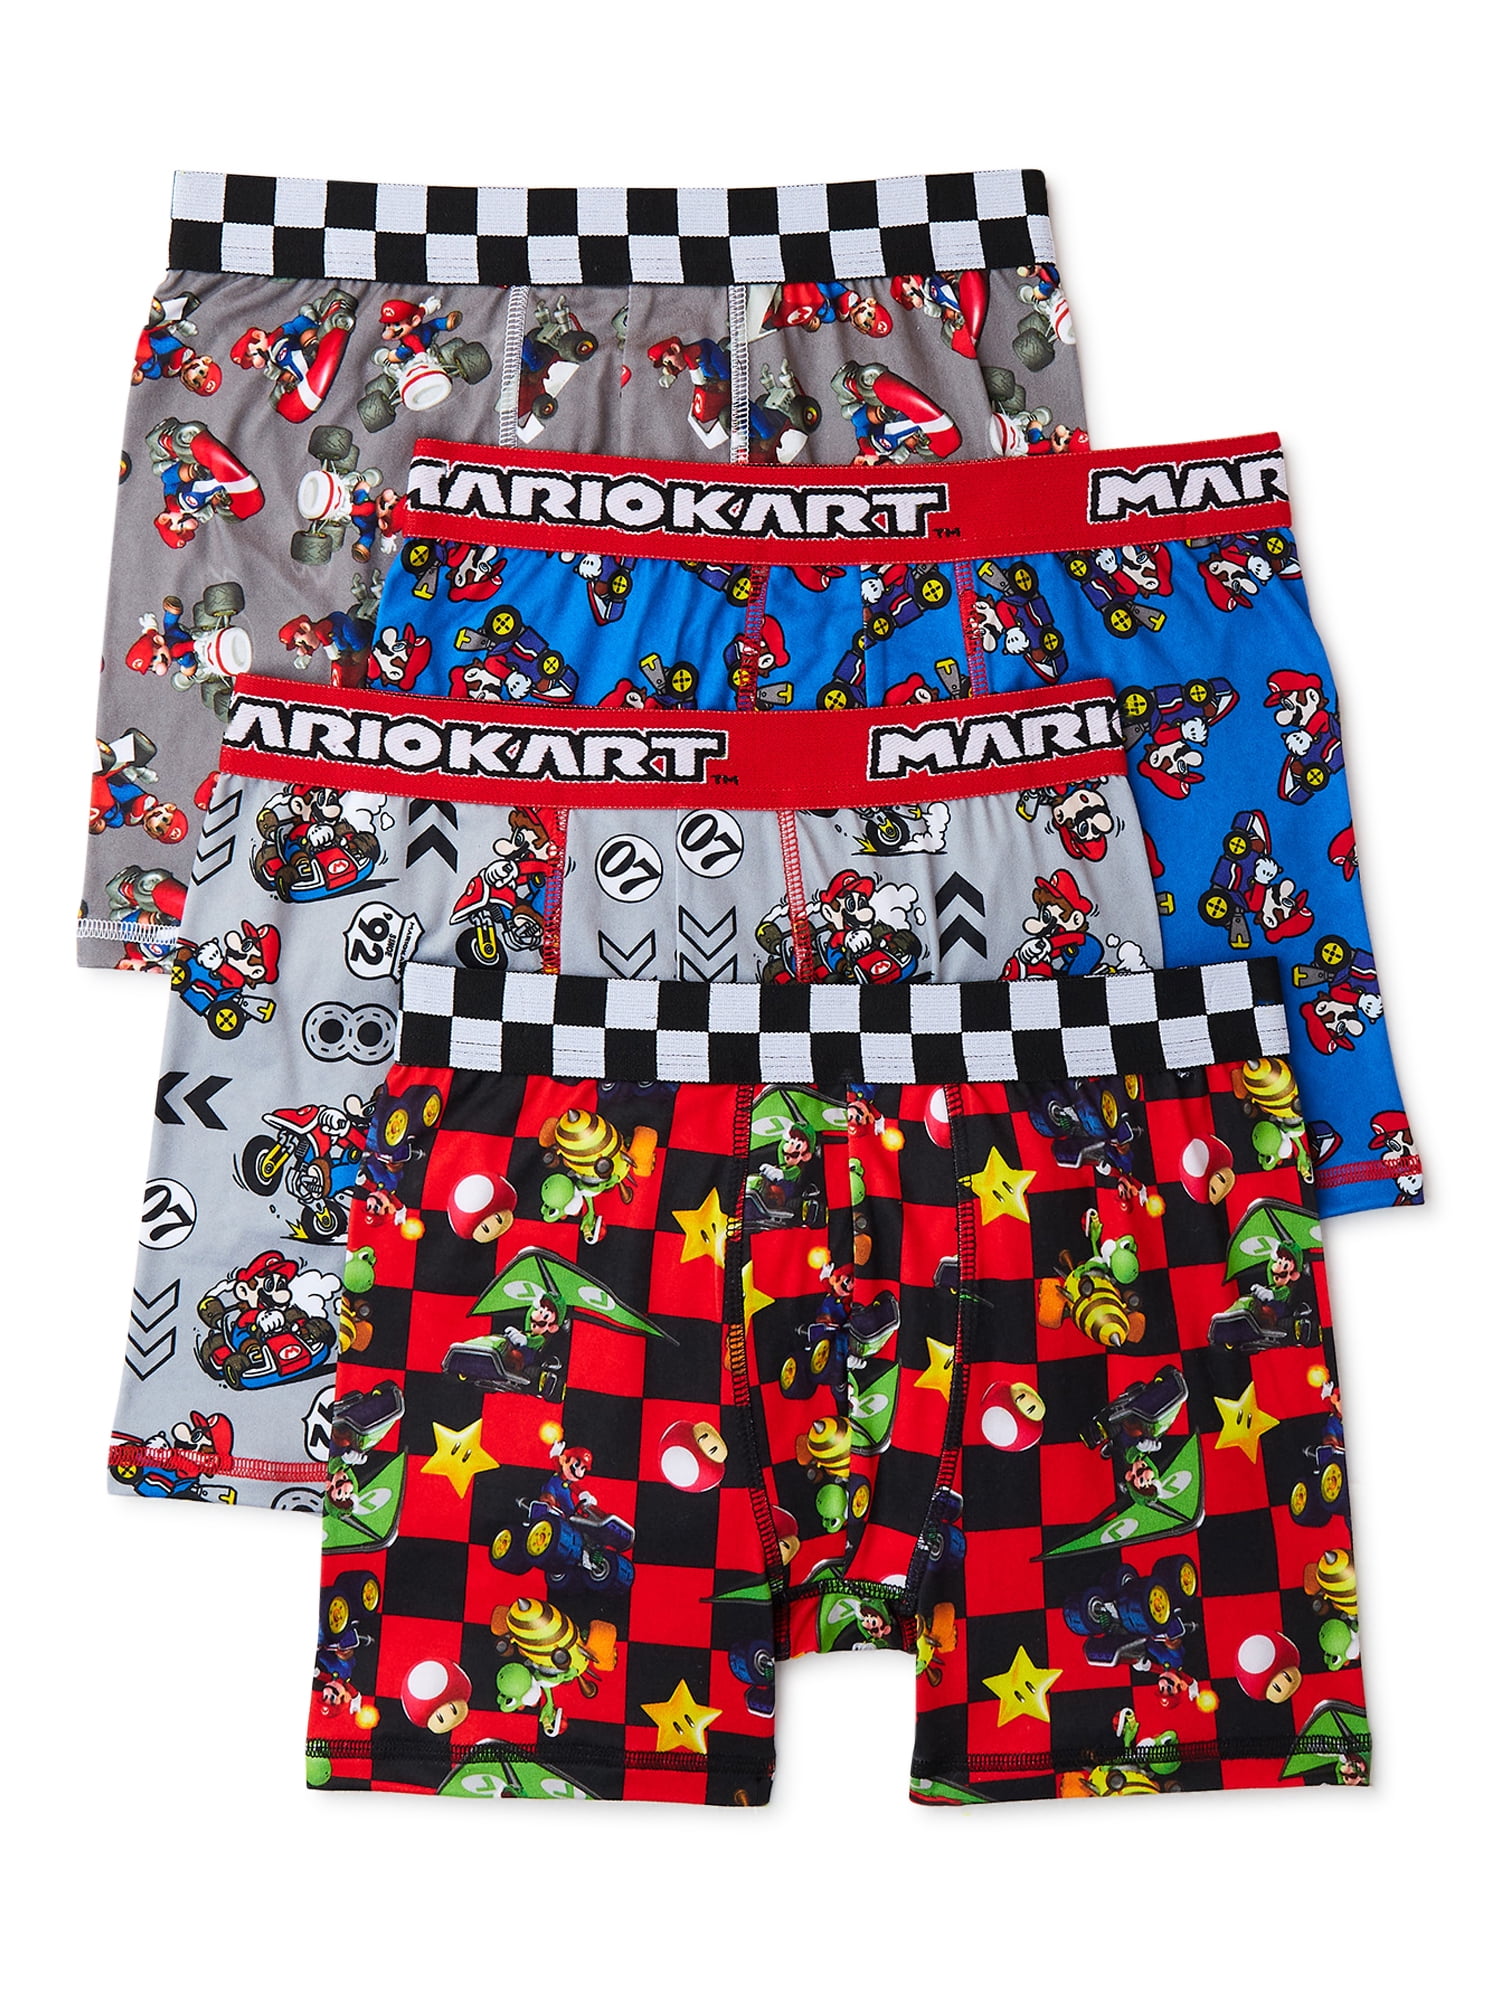 Nintendo Mario Kart Boys Boxer Brief Underwear, 4-Pack, Sizes 4-14 